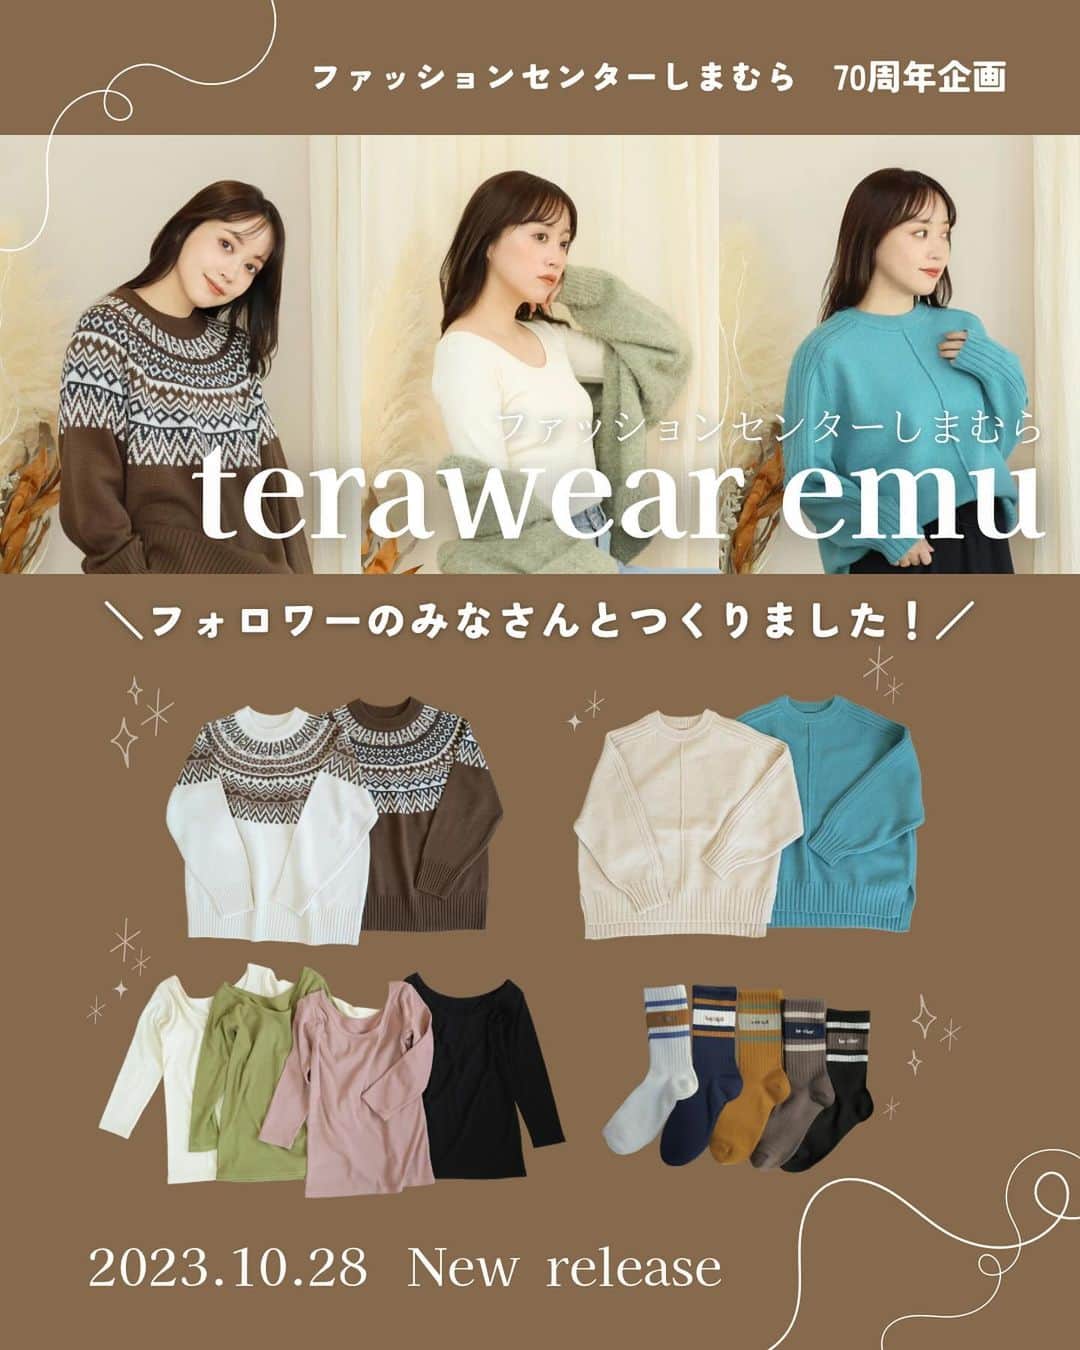 てらのインスタグラム：「みなさんこんばんは🌛☆ いつもterawear emuをご愛用いただき、 ありがとうございます☺️💕  @grshimamura にて展開中の 私のプロデュースブランド terawear emuから 新作発売のお知らせです📢❤️  ………………………………………  10月28日(土)〜 しまむら全店舗にて販売開始 (一部店舗販売のアイテムもあります)  10月28日(土)17:00～ オンラインストア販売開始 ………………………………………  今回発売のアイテムは！なんと！ しまむらさん70周年記念企画で フォロワーさんと一緒に作った アイテムたちです！📝  Instagramのストーリーズで アンケートをとり、 私とみなさんの意見を反映させた 特別なアイテム✨(覚えてるかなー？☺️)  ようやく完成したサンプルを手に取ったとき、 とっても幸せな気持ちに包まれました🫧 私とフォロワーさんの好きが詰まった アイテムになったなぁと感じました☺️  みなさんにも早くお披露目したくて そわそわウズウズしていたので、 やっとお伝えできて嬉しいです。 みんないつも本当にありがとう🥲❤️  伝えたいことがあり過ぎて 投稿には書ききれない長文を、 キャプションに綴らせてください…🤣 長いけど読んでくれますか…？笑  【ニット2種】 今年の冬に着たい可愛いニット🧶♡ ひとつめは、無地のニットです！ センターシームや袖山リブで すっきり華奢見えなデザインです✨  アンケートでは、ネックデザインを ハイネック・クルーネック・キーネック の中から選んでいただき、 一番人気のクルーネックを採用しました☺️✨  カラーのアンケートでは、 差し色をみんなに選んでもらいました🎨 レッド・グリーン・ブルーの中から 一番多く選ばれたのは、ブルーでした💙👏  もう一型は、柄ニットをつくりました🧶 アンケートでは、柄とカラーを みんなに選んでもらいました☺️  求心柄・ヘリンボーン柄・ストライプ柄 の候補の中で一番人気だったのは、 求人柄でした！❄️👏  候補にあったヘリンボーン柄は 過去のterawear emuで１番人気だったので アンケートでも本当に大人気でしたが、 僅差で選ばれたのは求心柄💪✨  カラーもみんなに選んでもらって、 とってもterawear emuらしい 求心柄ニットに仕上がりました🤎  【長袖インナー】 terawear emu初のインナーです！！👏✨ 初めてのインナーのプロデュースということで 悩むことも多かったのですが、 みんなの意見を取り入れたことで こんなに素敵な冬インナーを つくることができました⛄️💓  身生地部分は裏起毛仕様であったかく、 首元が空いたお洋服を着ても見えにくい 「深あき仕様」なので、 トレンドのざっくりとしたニットの インナーにぴったり✨ 冬のお洒落を支えてくれます✨  そしてこの季節になると フォロワーさんからよく聞くお悩み、、 それは静電気問題。  こちらのインナーは静電防止加工つき！ 服がまとわりつきにくいのは 嬉しいポイントですよね☺️  【靴下】 久しぶりの靴下🧦✨ みんなと一緒につくることができて とっても嬉しかったです👏✨  何柄にするか？からはじまった靴下づくり。 ラインは何本がいいか？まで フォロワーさんと一緒に決めました☺️✨ emuらしい配色で、 使いやすいラインソックスに なったと思います🧦👏  どのアイテムにも、 私とみんなの好きが詰まっていて 眺めているだけで幸せな気持ちです💐 たくさんの方に、 同じ気持ちが届きますように。 ぜひ店頭でチェックしてみてくださいね！！  #PR #しまパト#しまむら#しまむらパトロール#しまむらコーデ#ファッションセンターしまむら#プチプラ#プチプラコーデ#ママコーデ#きっと見つかる#みんなワクワク#terawearemu#秋コーデ#冬コーデ#秋冬コーデ#ラインソックス#求心柄ニット#冬インナー」